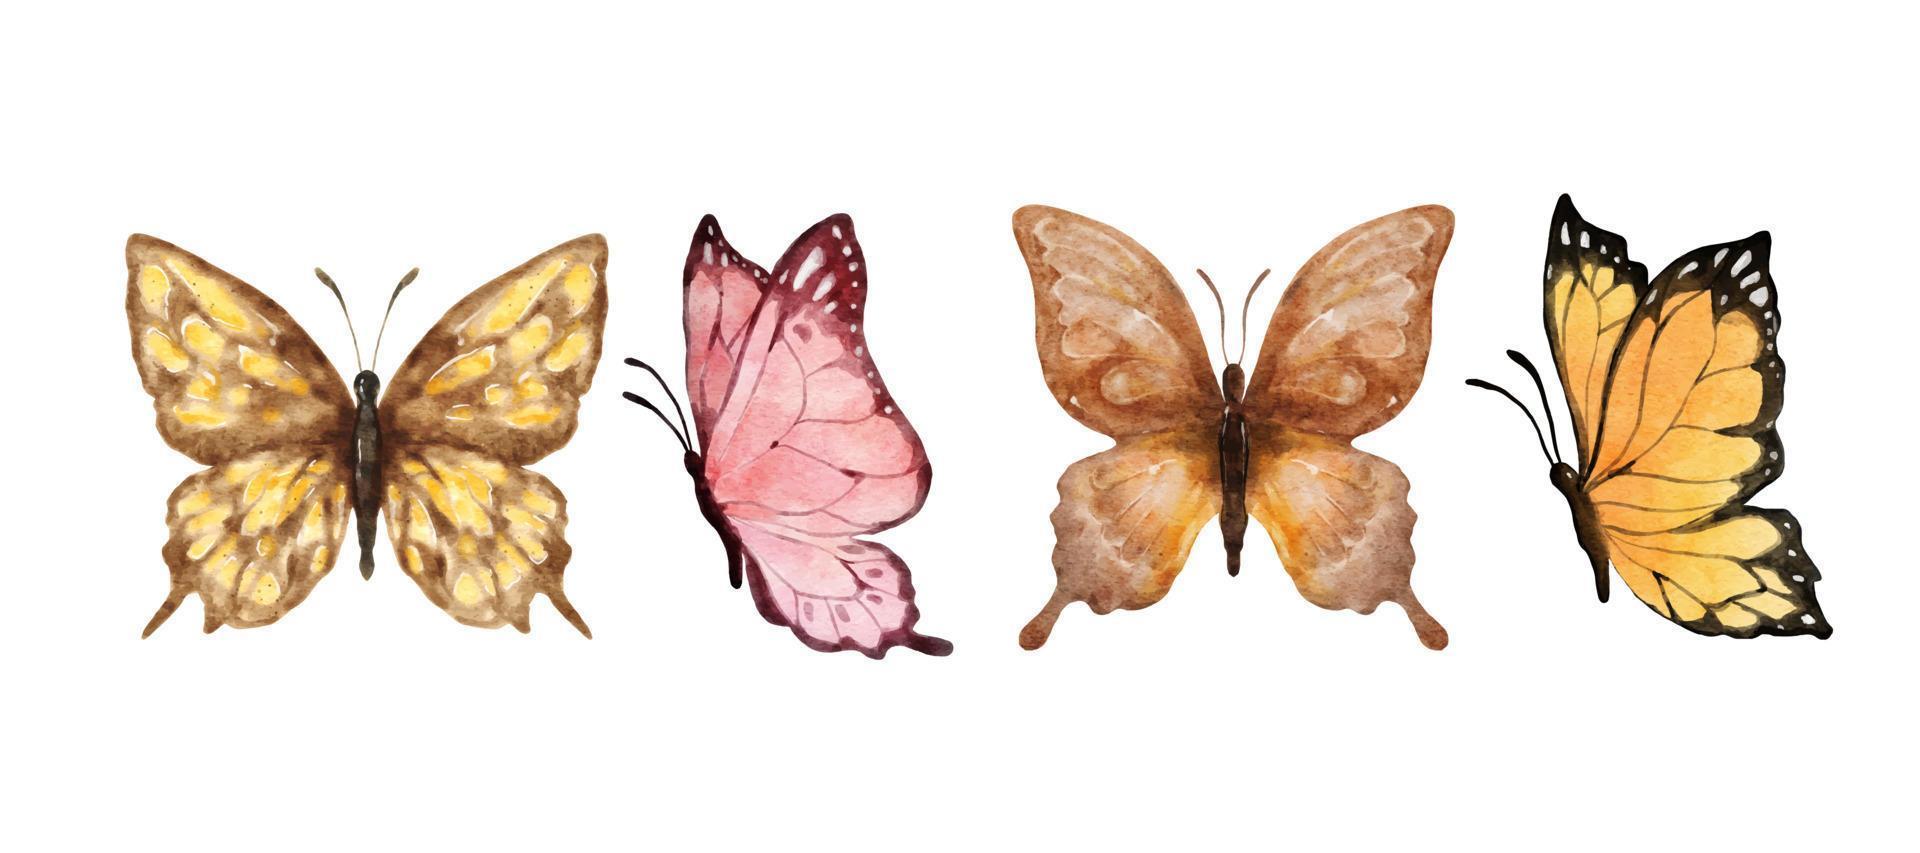 buntes Schmetterlingsaquarell lokalisiert auf weißem Hintergrund. brauner, rosa, gelber und orangefarbener Schmetterling. Frühling Tier-Vektor-Illustration vektor